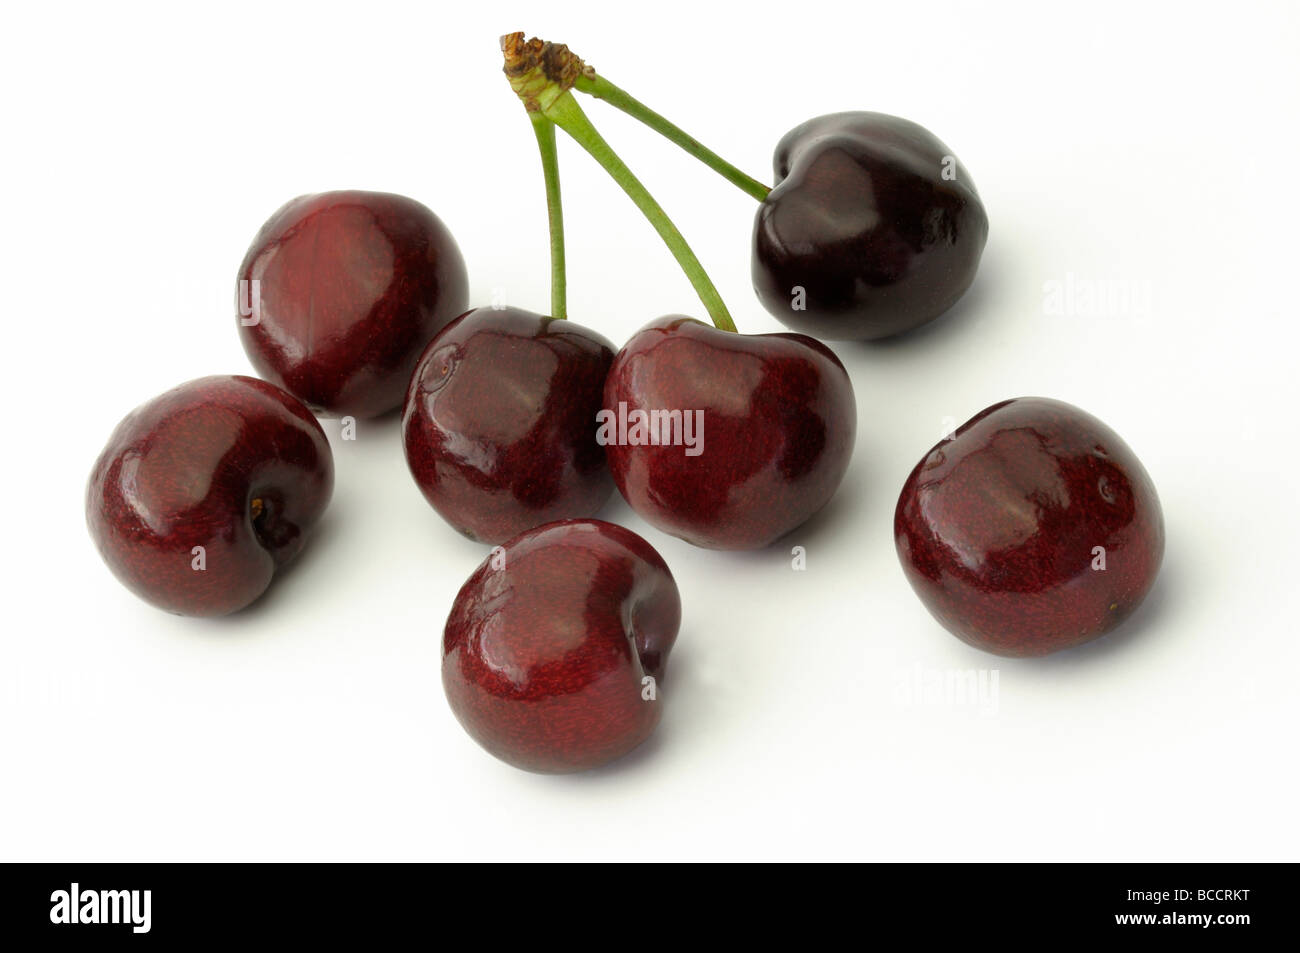 Sweet Cherry (Prunus avium), ripe cherries, studio picture Stock Photo